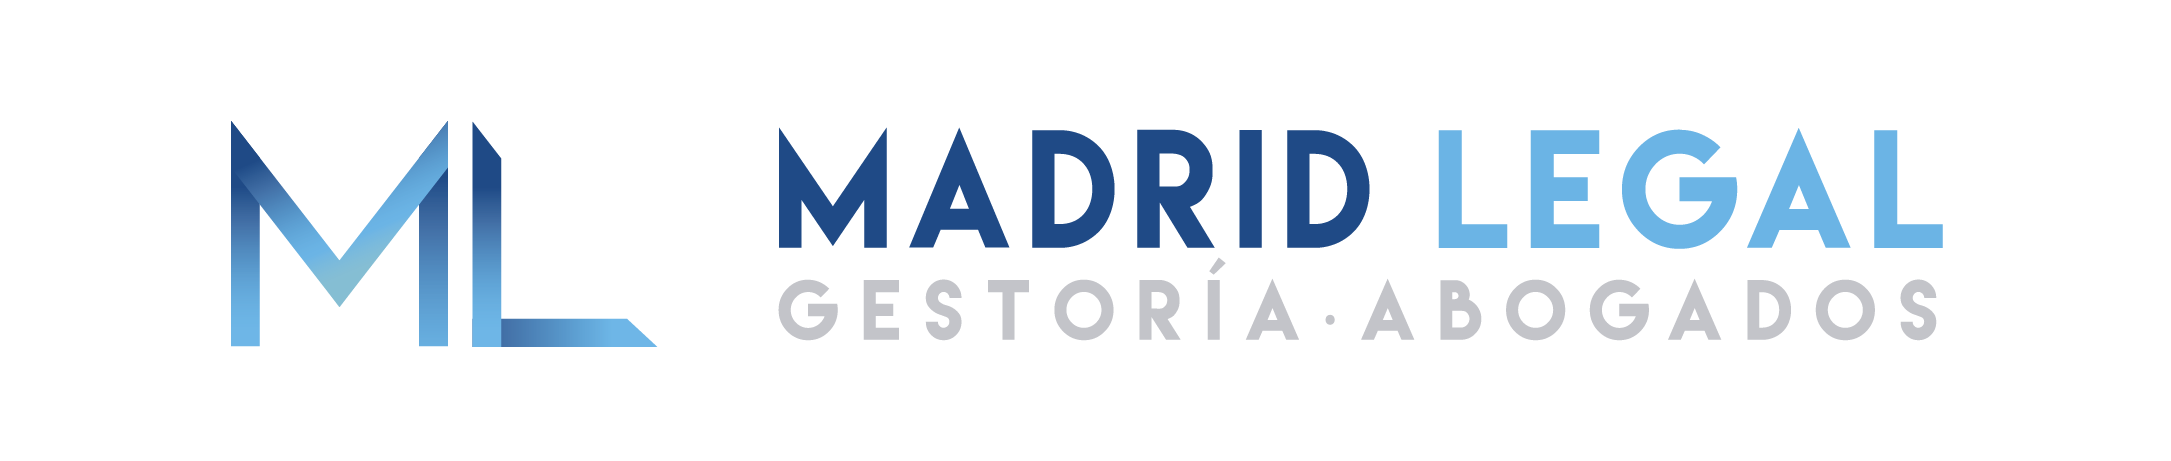 Madrid Legal